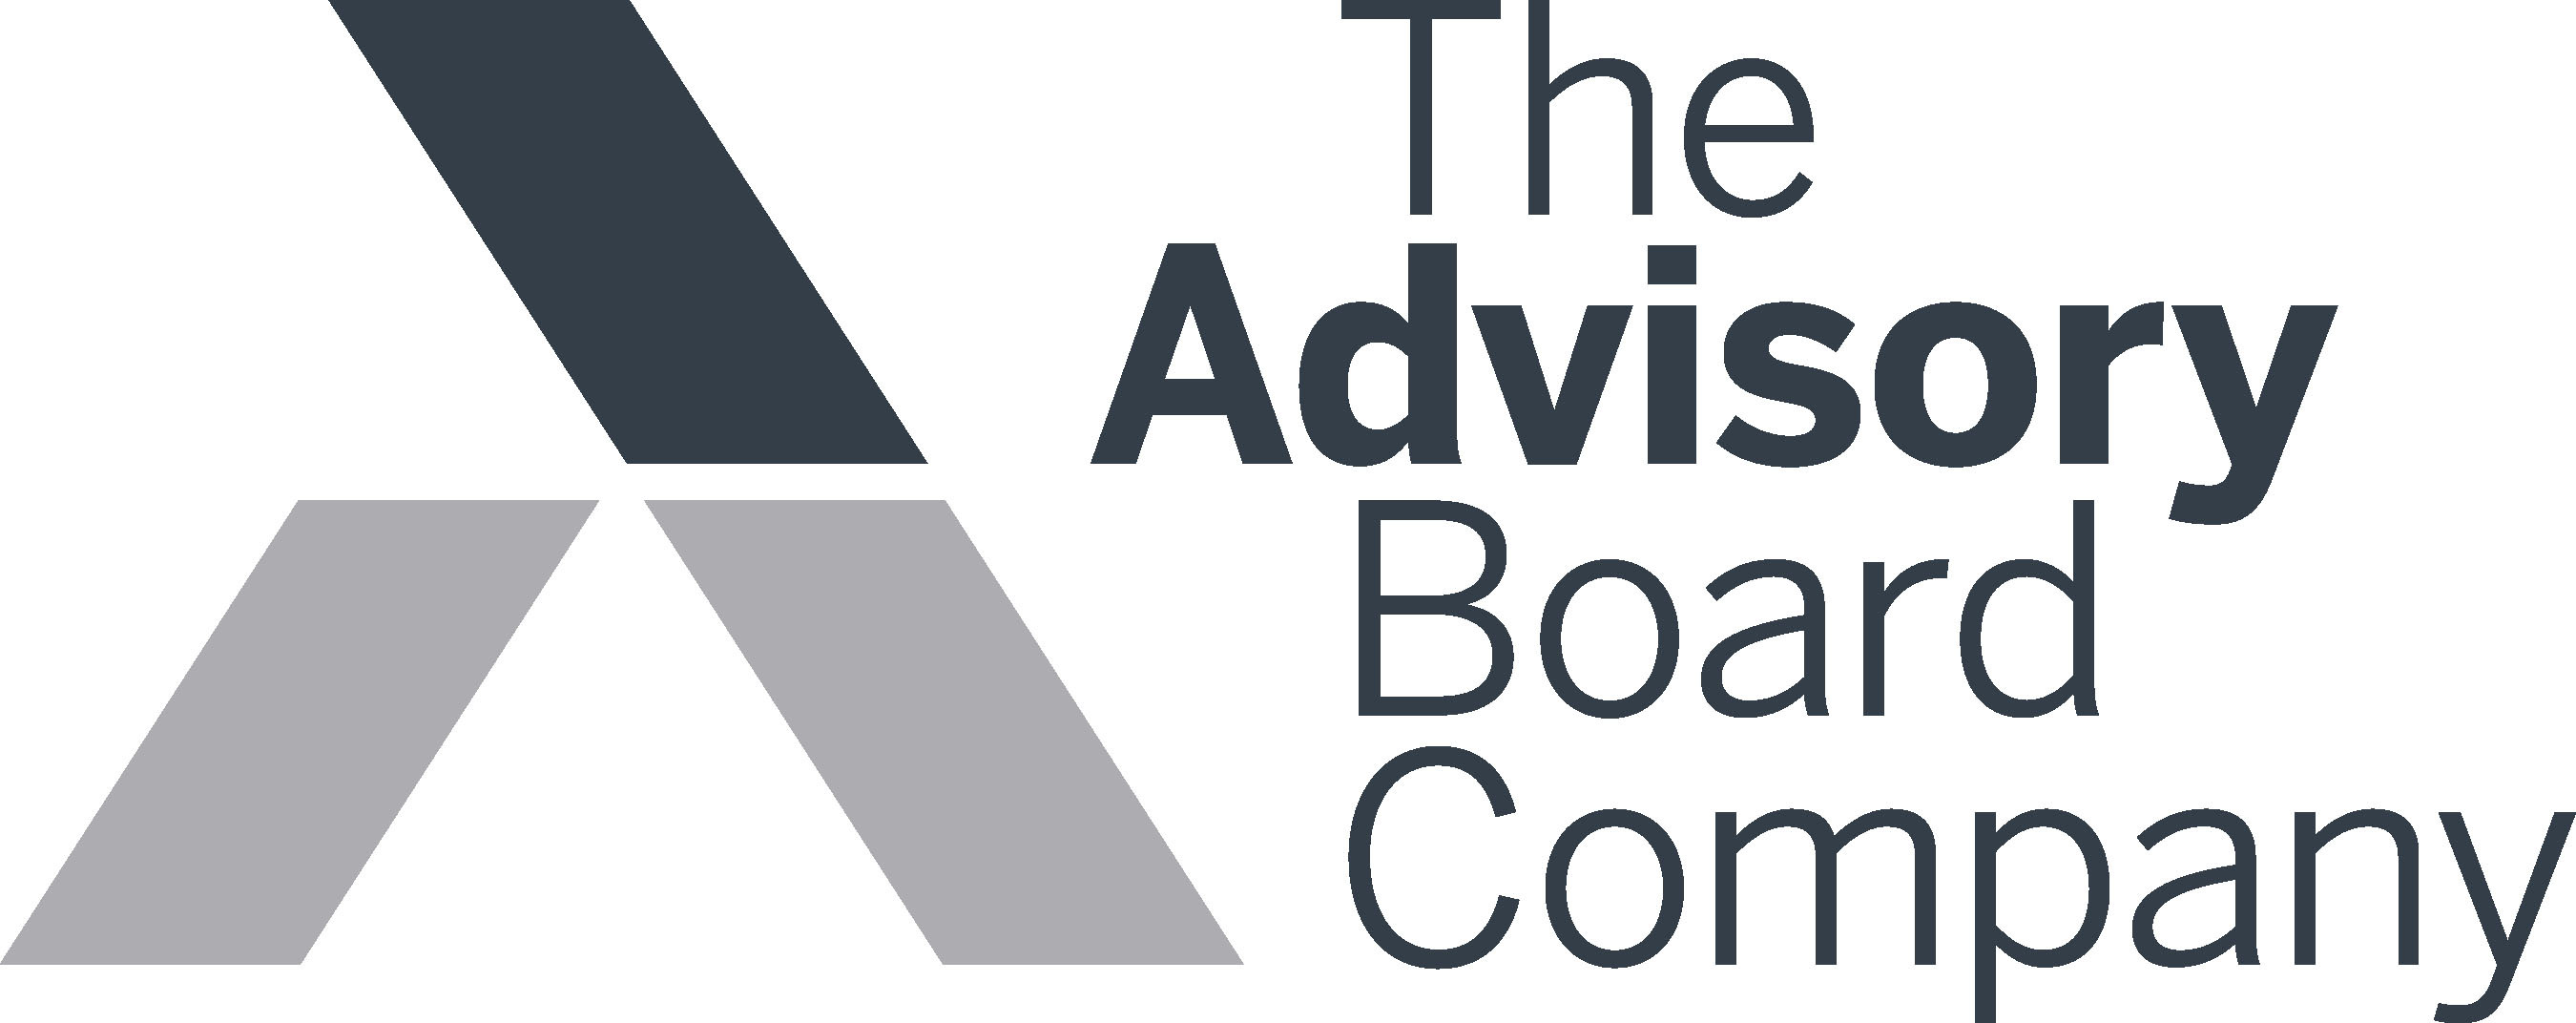 The Advisory Board Company.